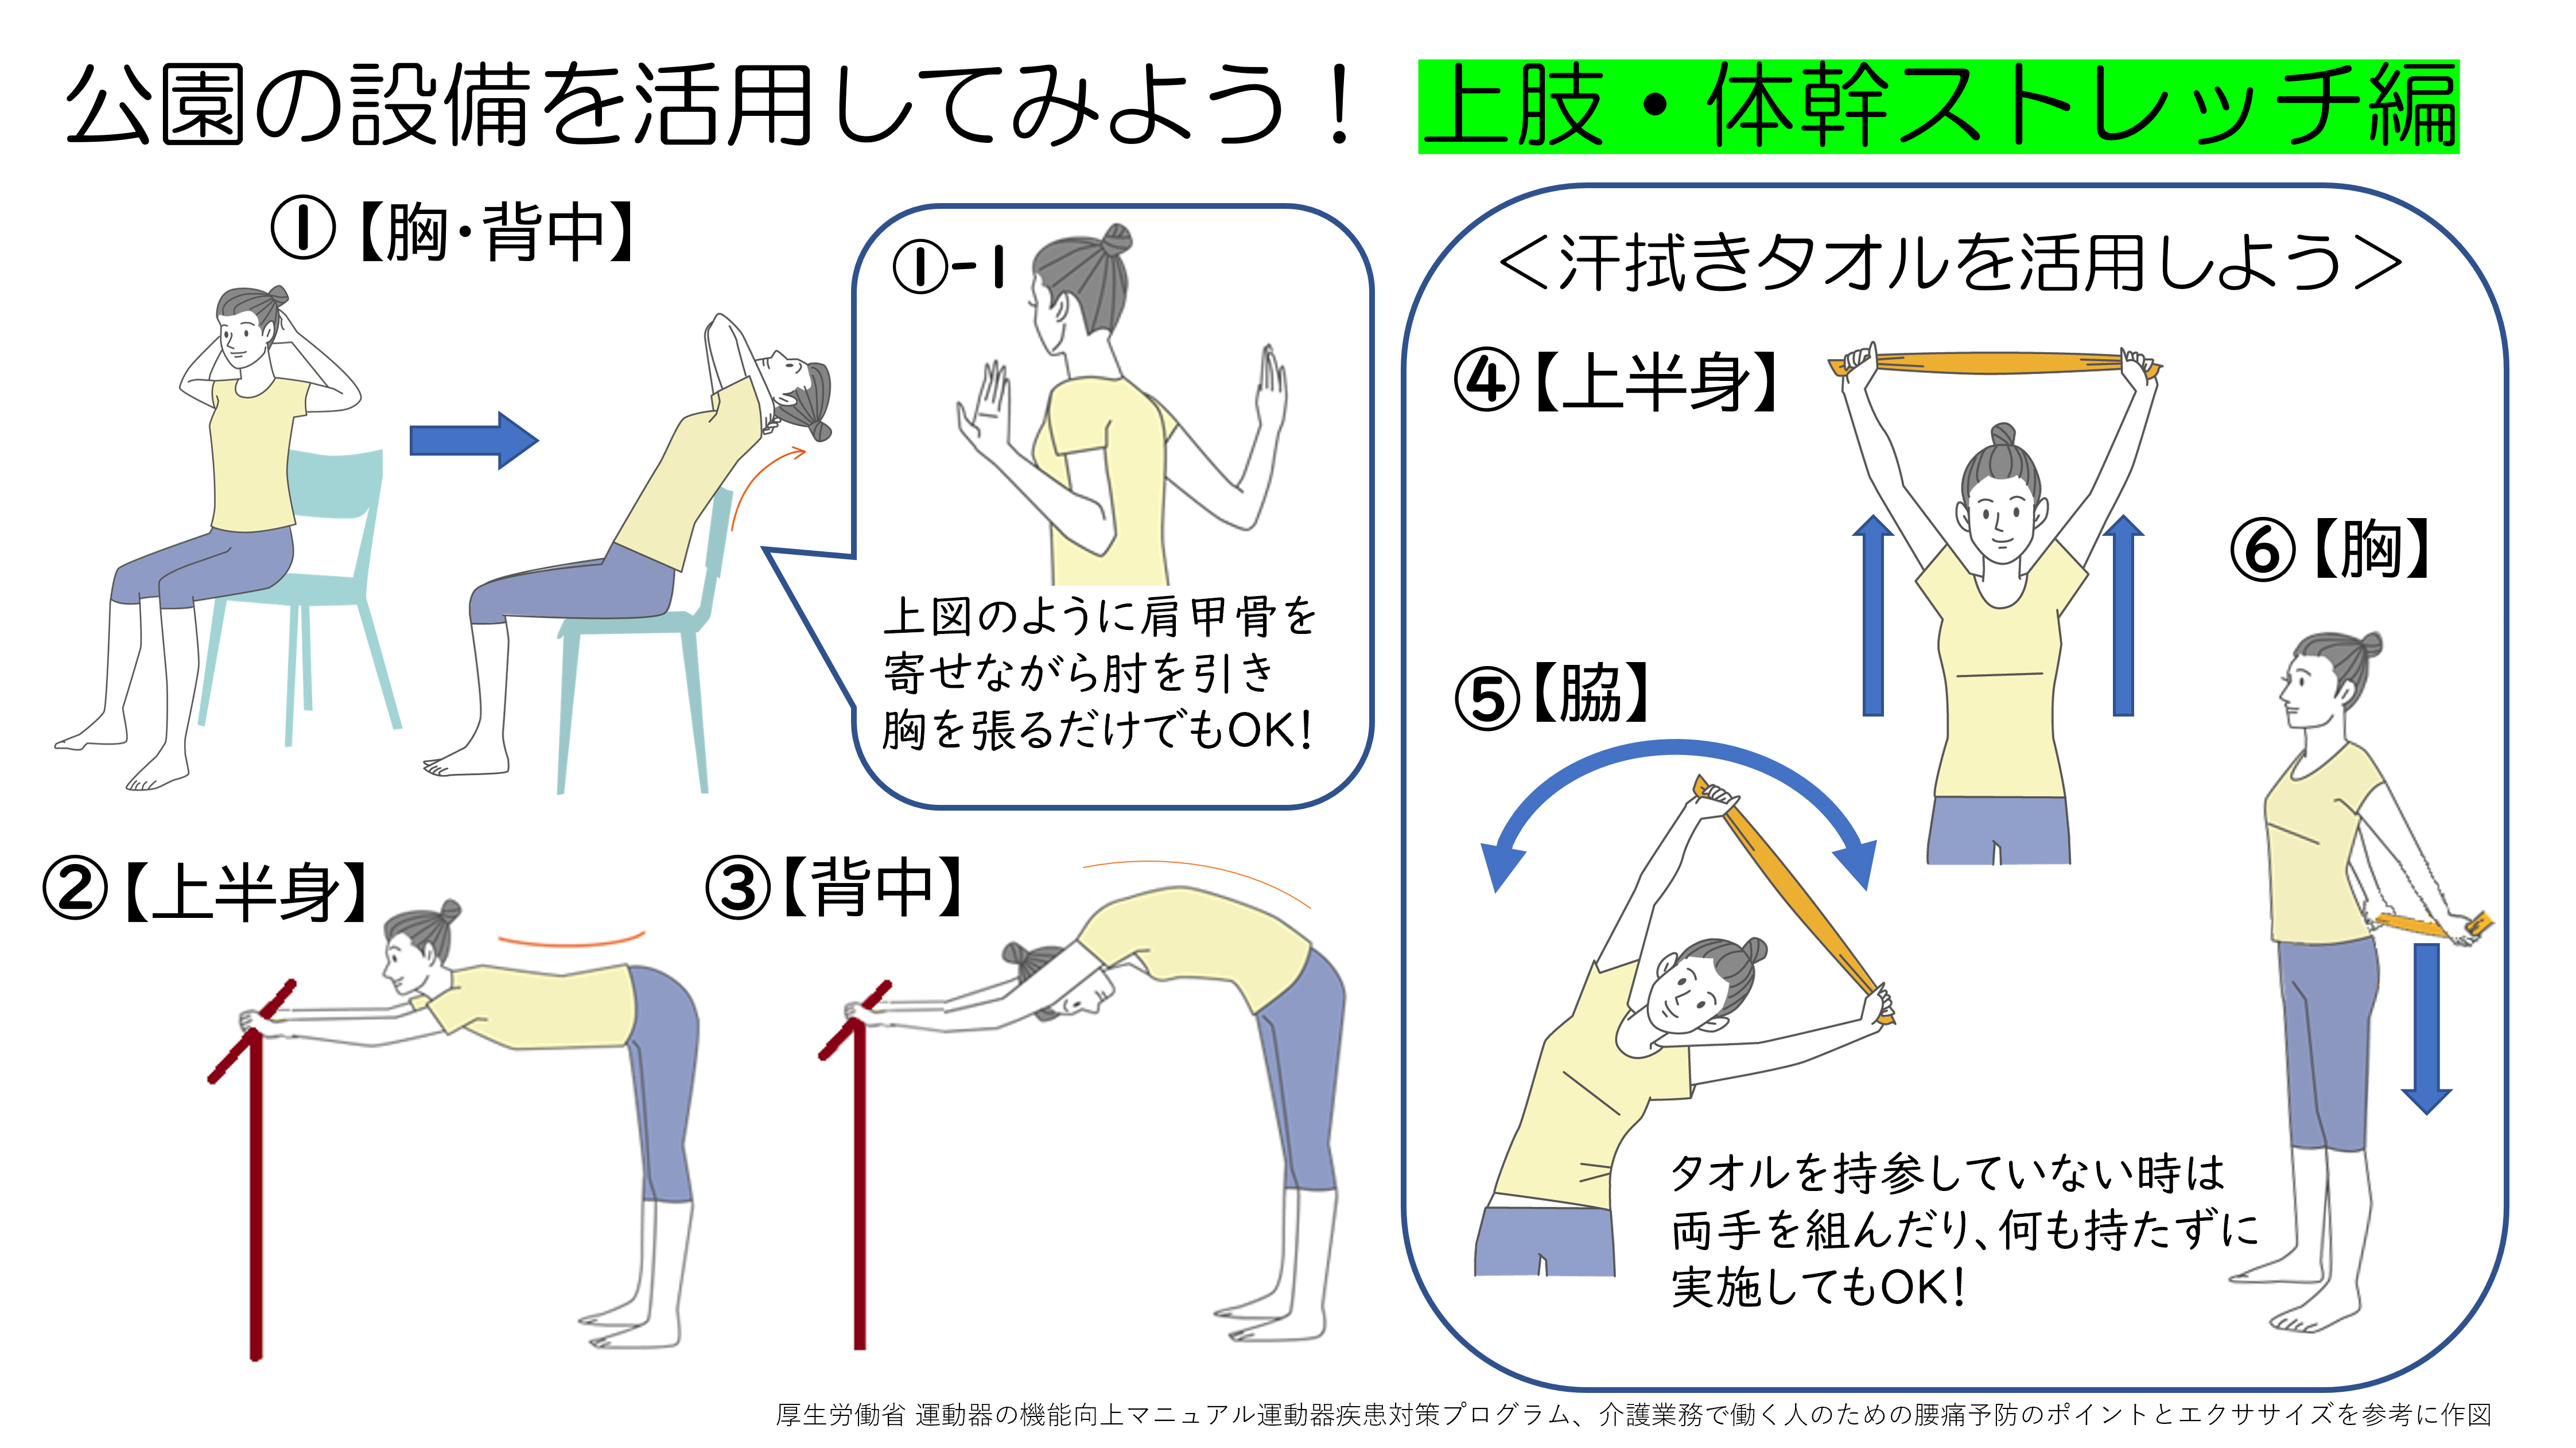 上肢・体幹ストレッチ編の図